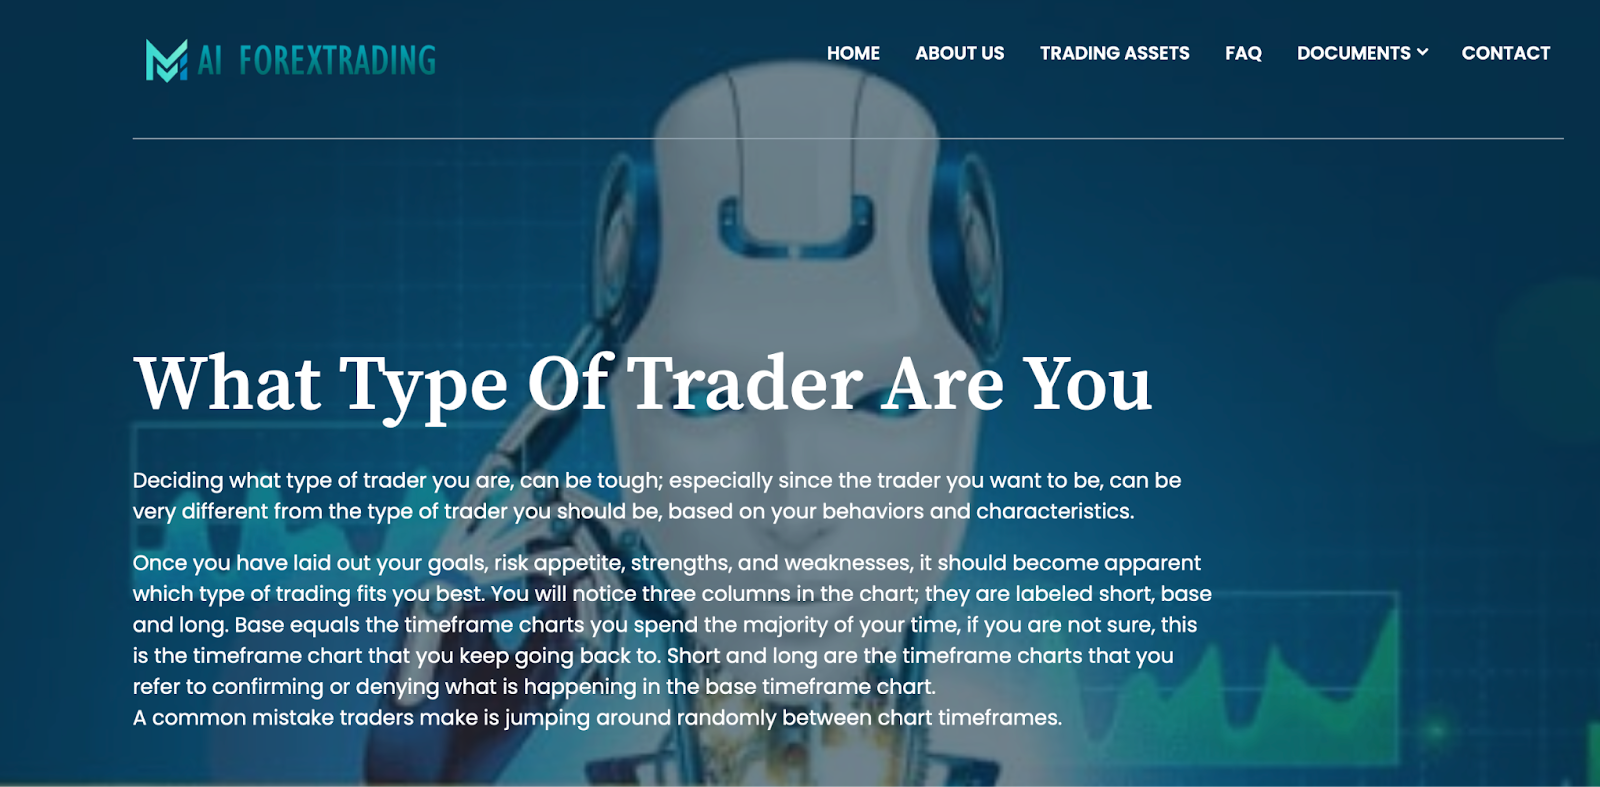 AI ForexTrading je investiční platforma s integrovaným automatizovaným obchodním systémem